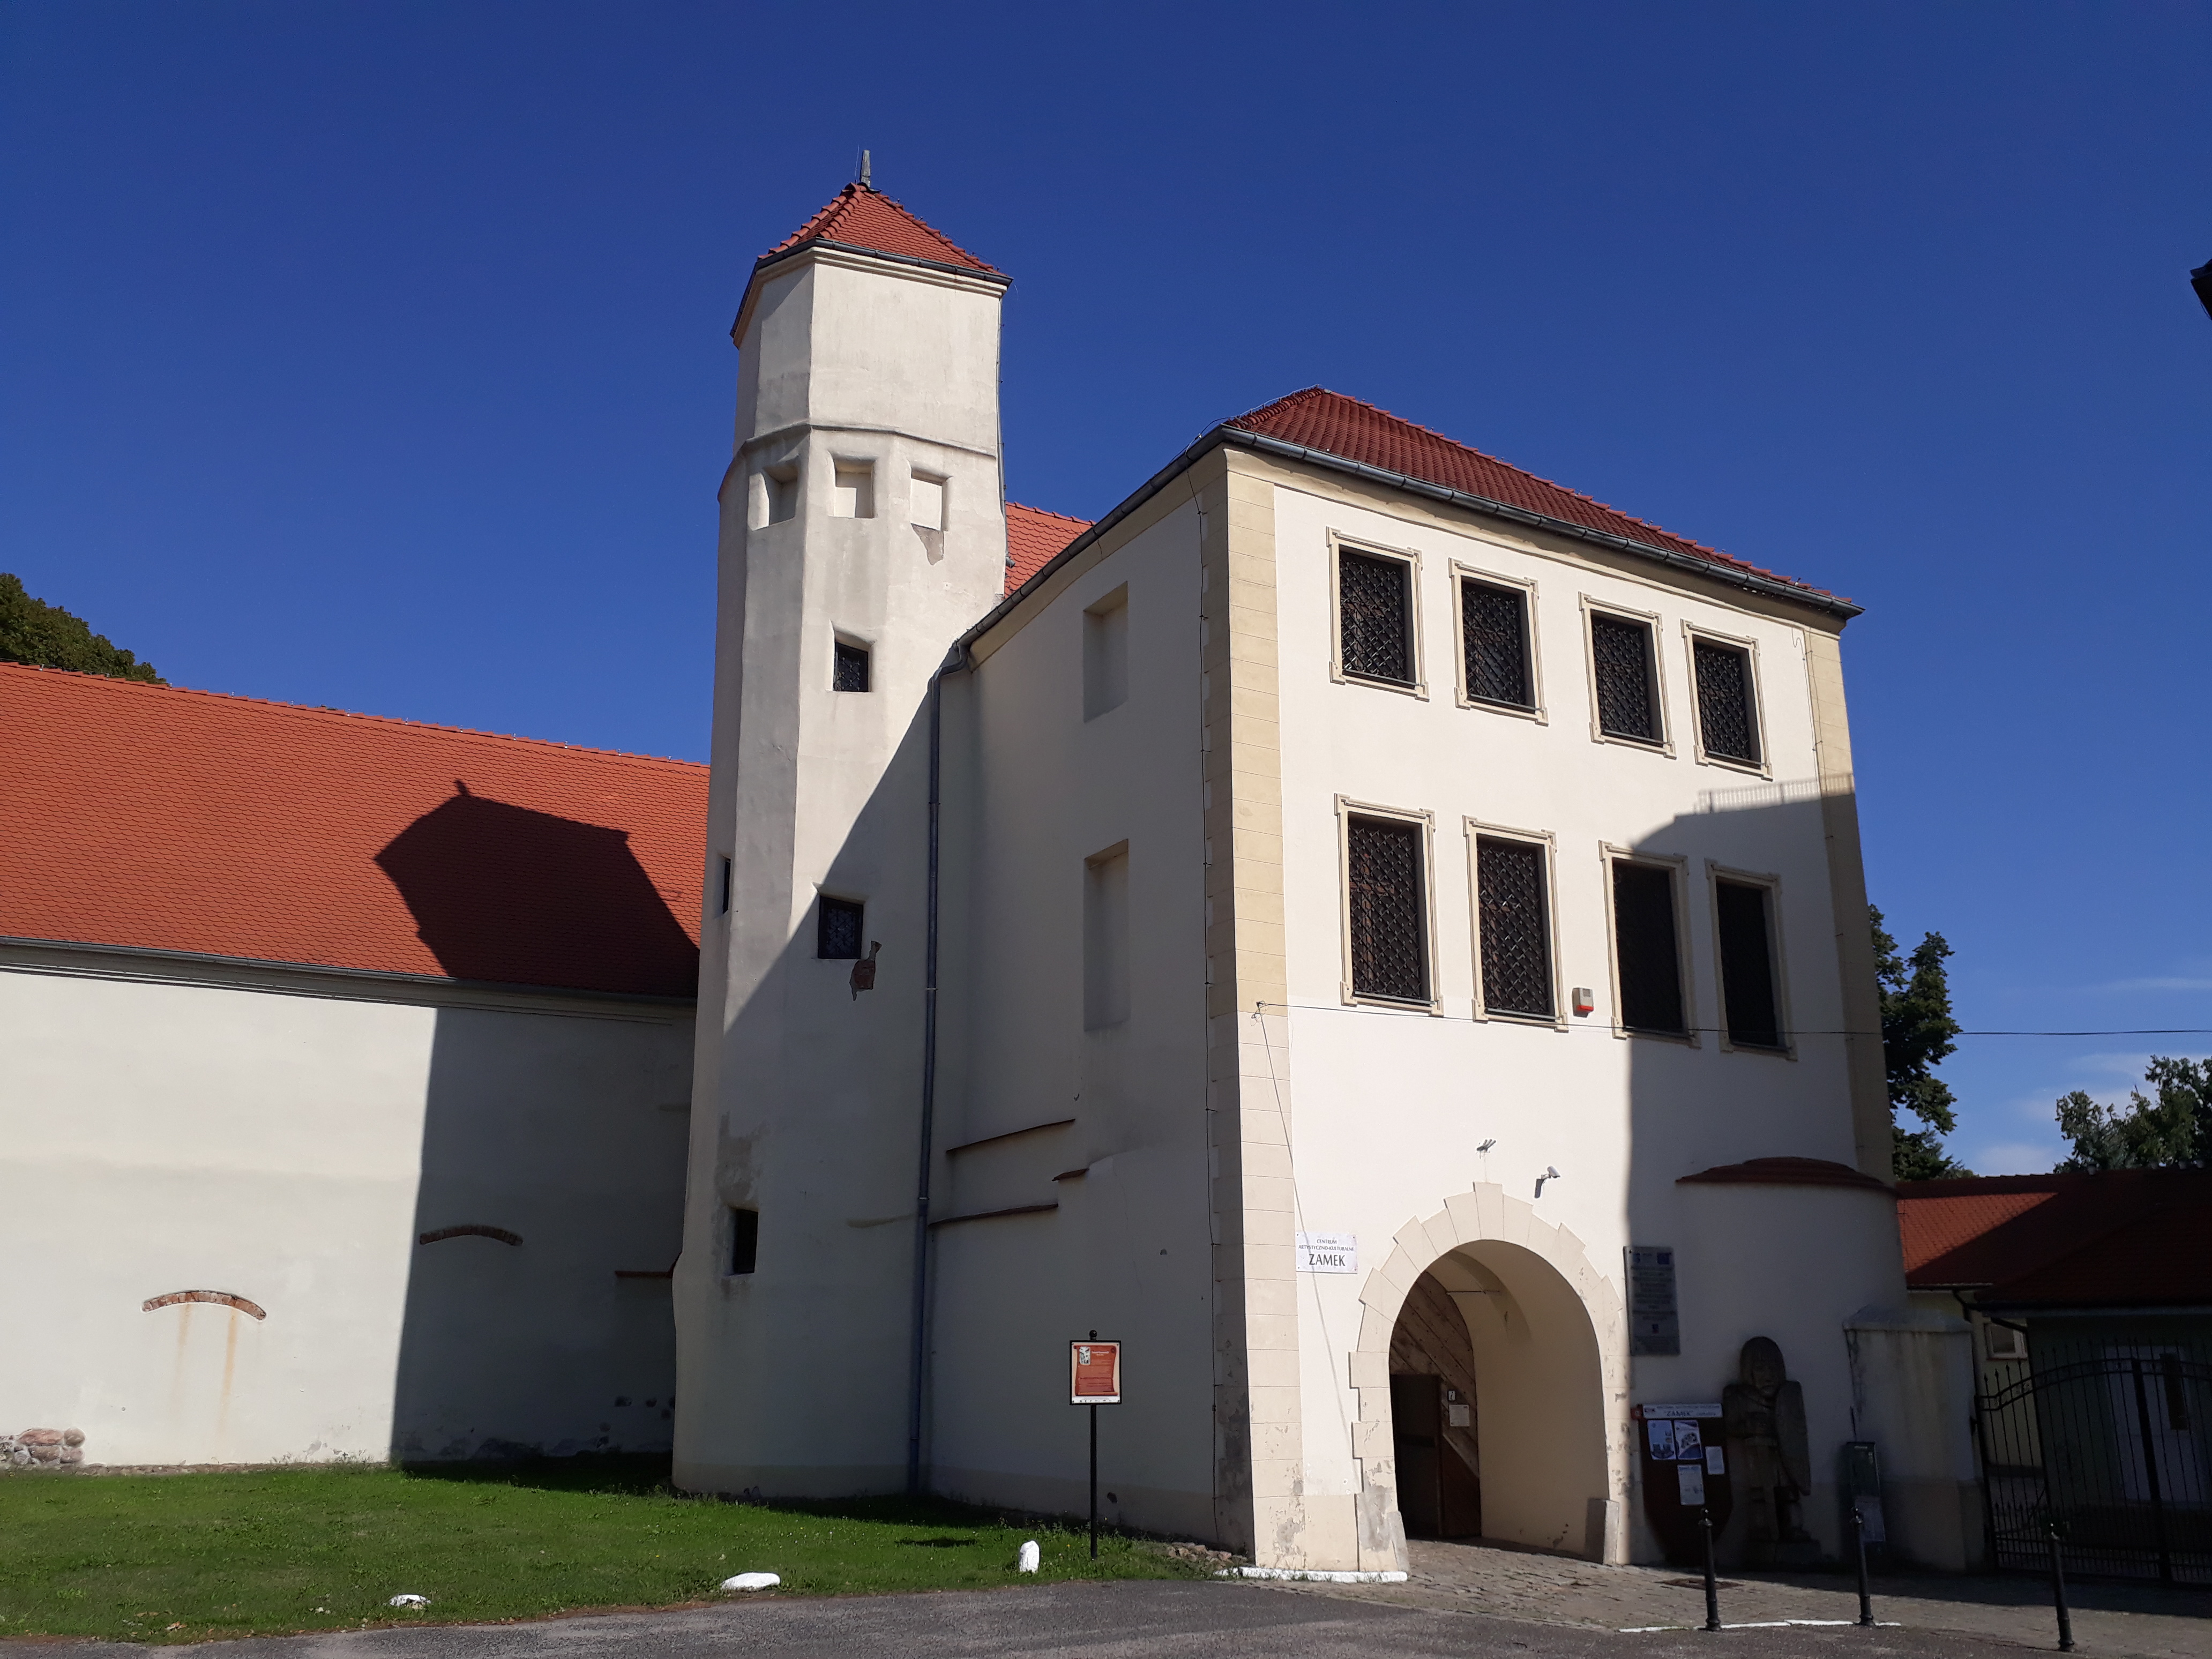 Zamek Piastowski Krosno Odrzańskie